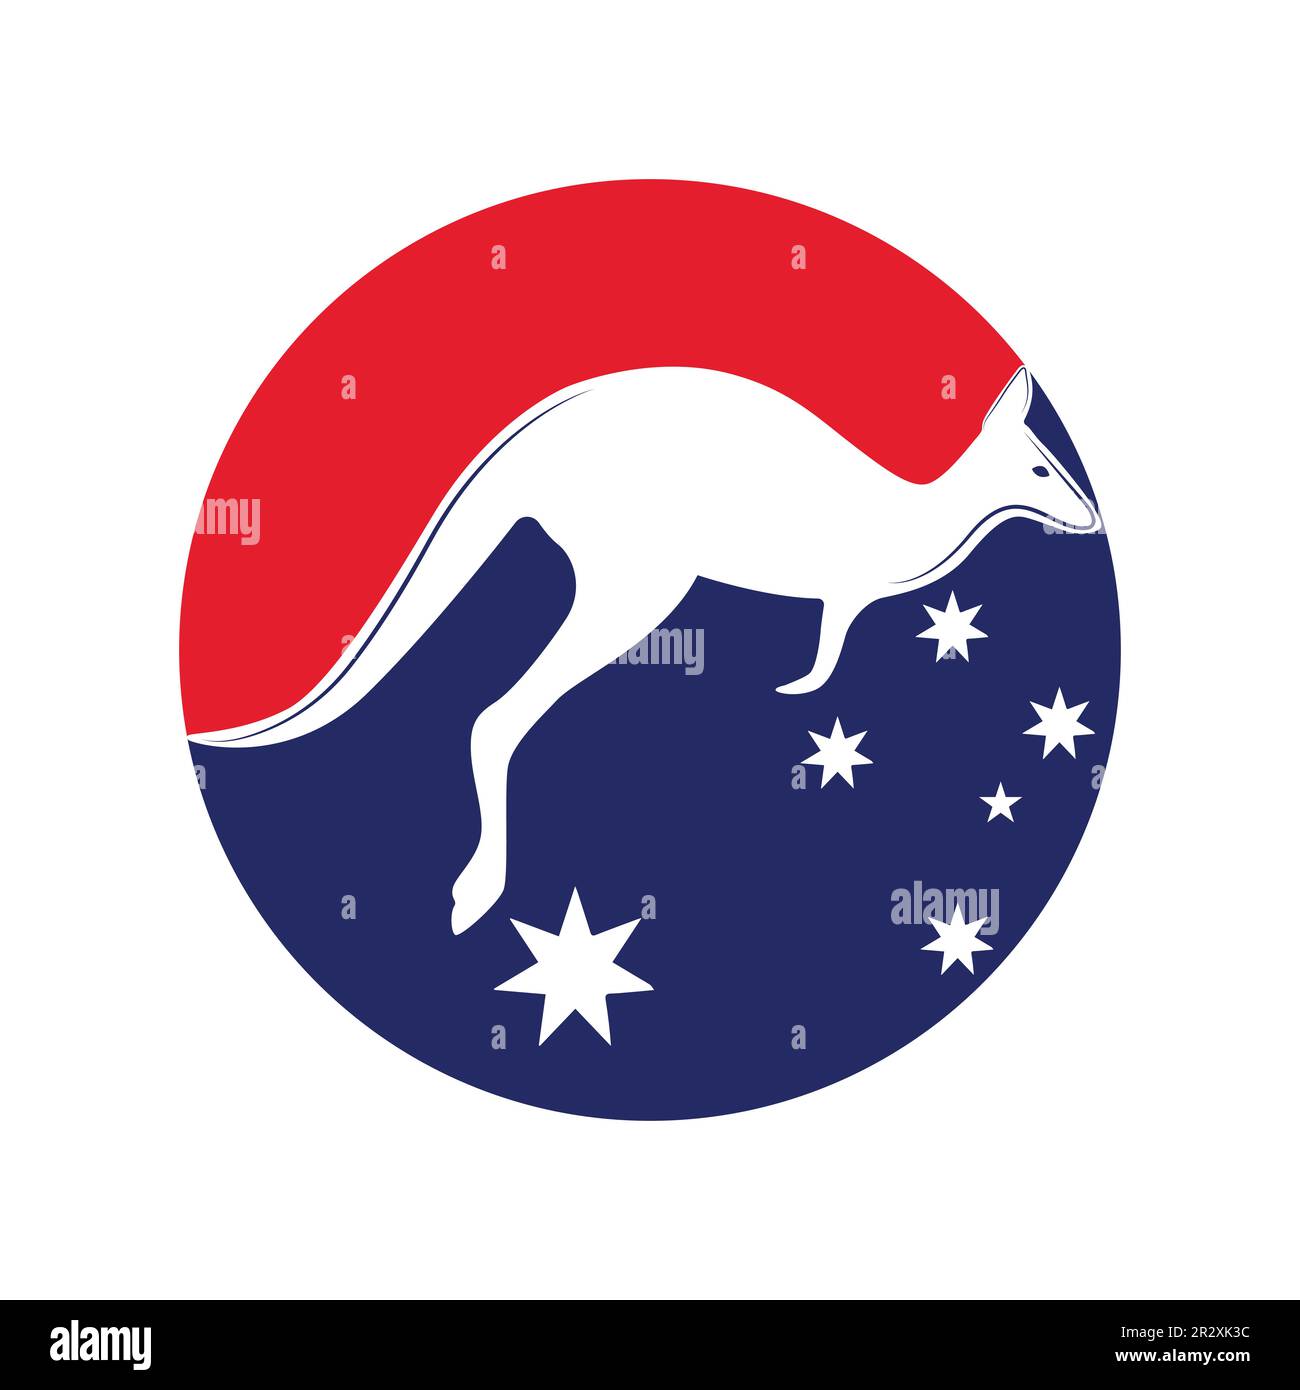 Känguru-Sprung-Logo-Vorlage Vektordarstellung in einer Form von kreisförmigen farben und Sternen der australischen Flagge. Stock Vektor